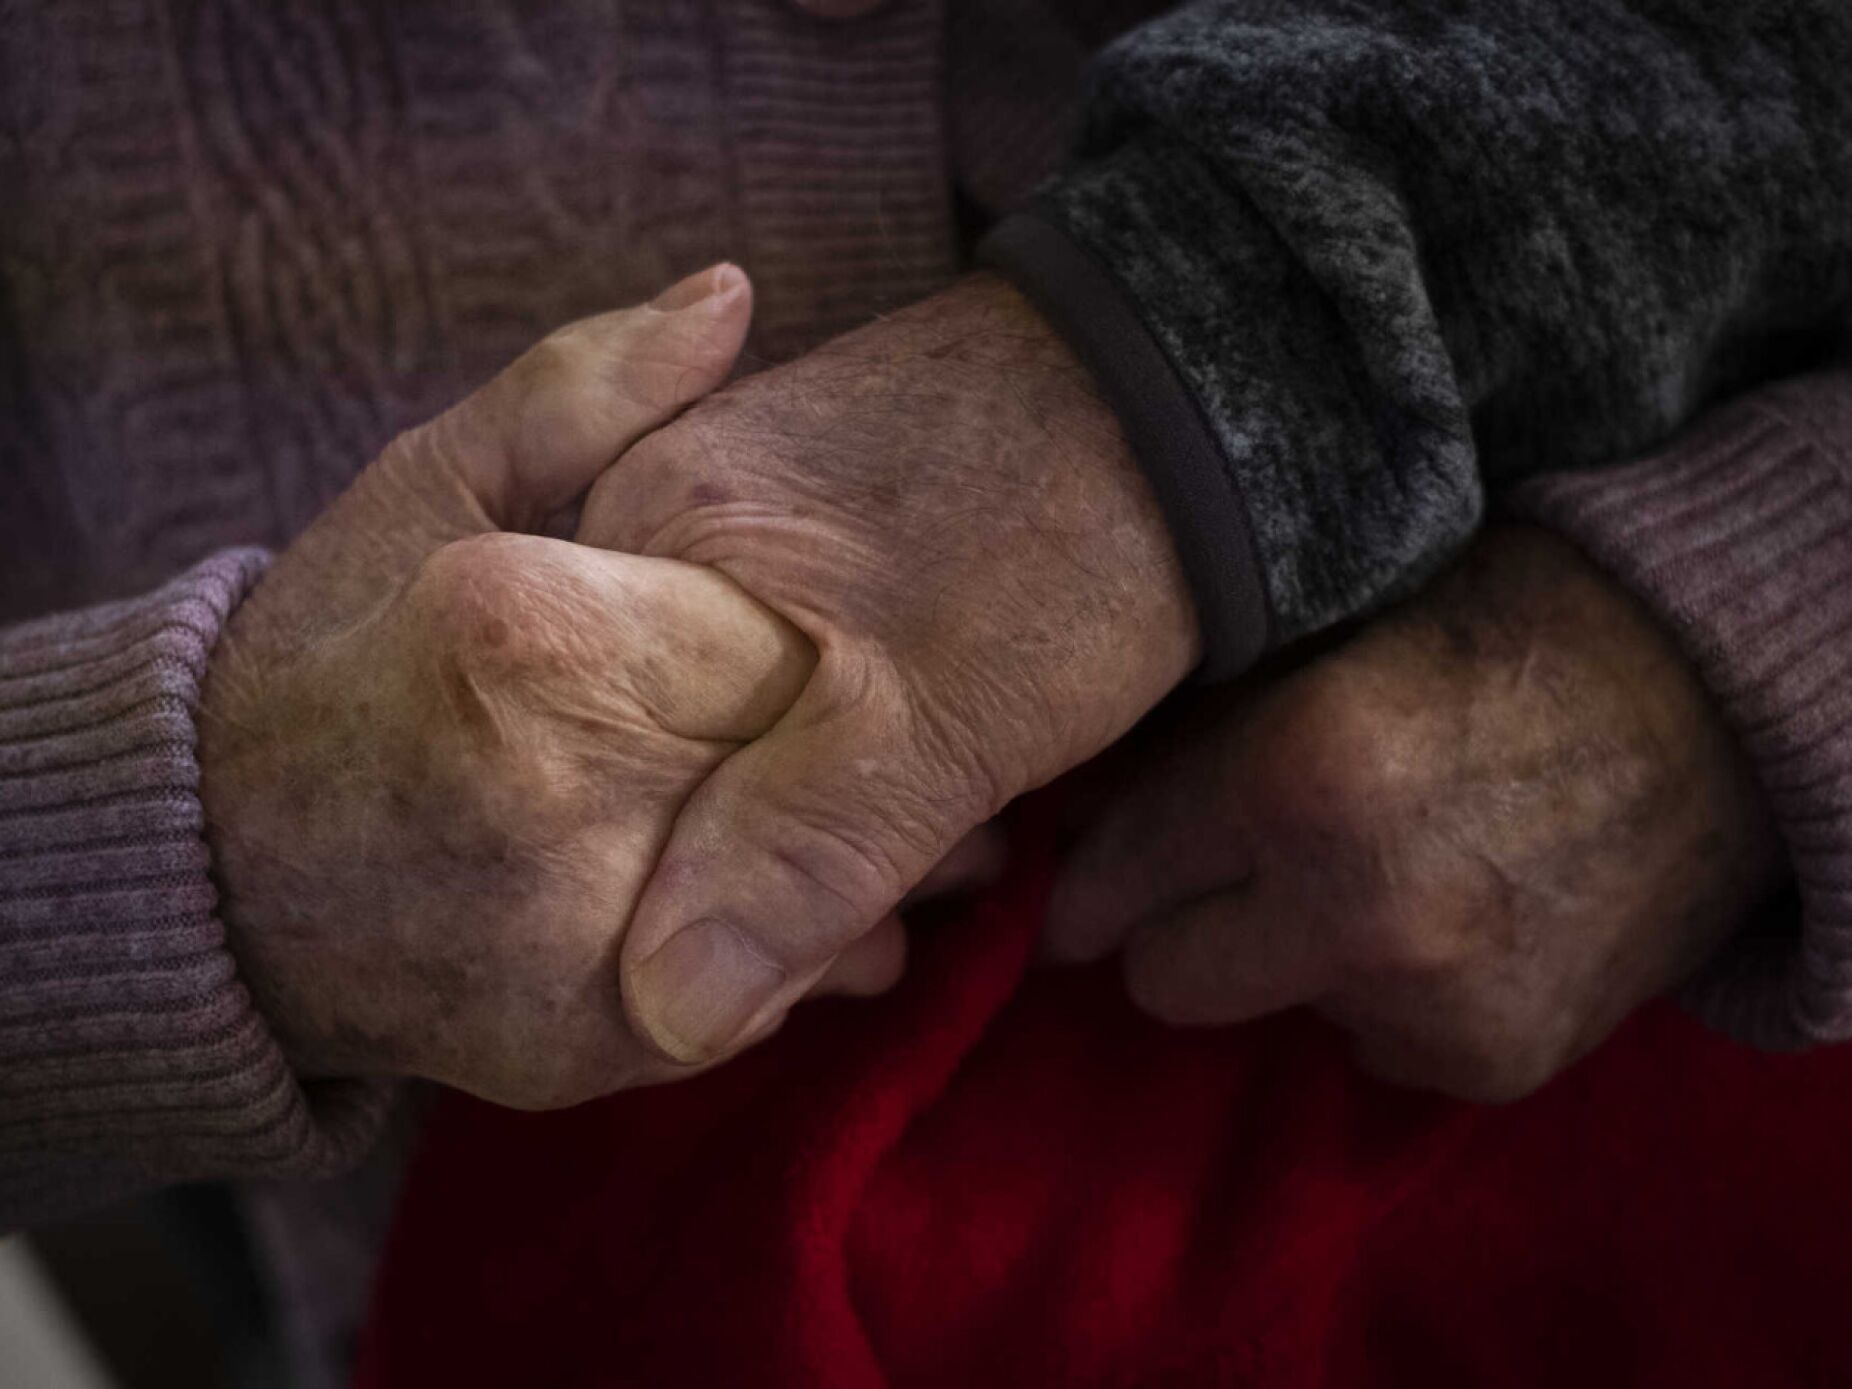 Um milhão de pessoas vivem sozinhas em Portugal. Mais de 500 mil são idosos